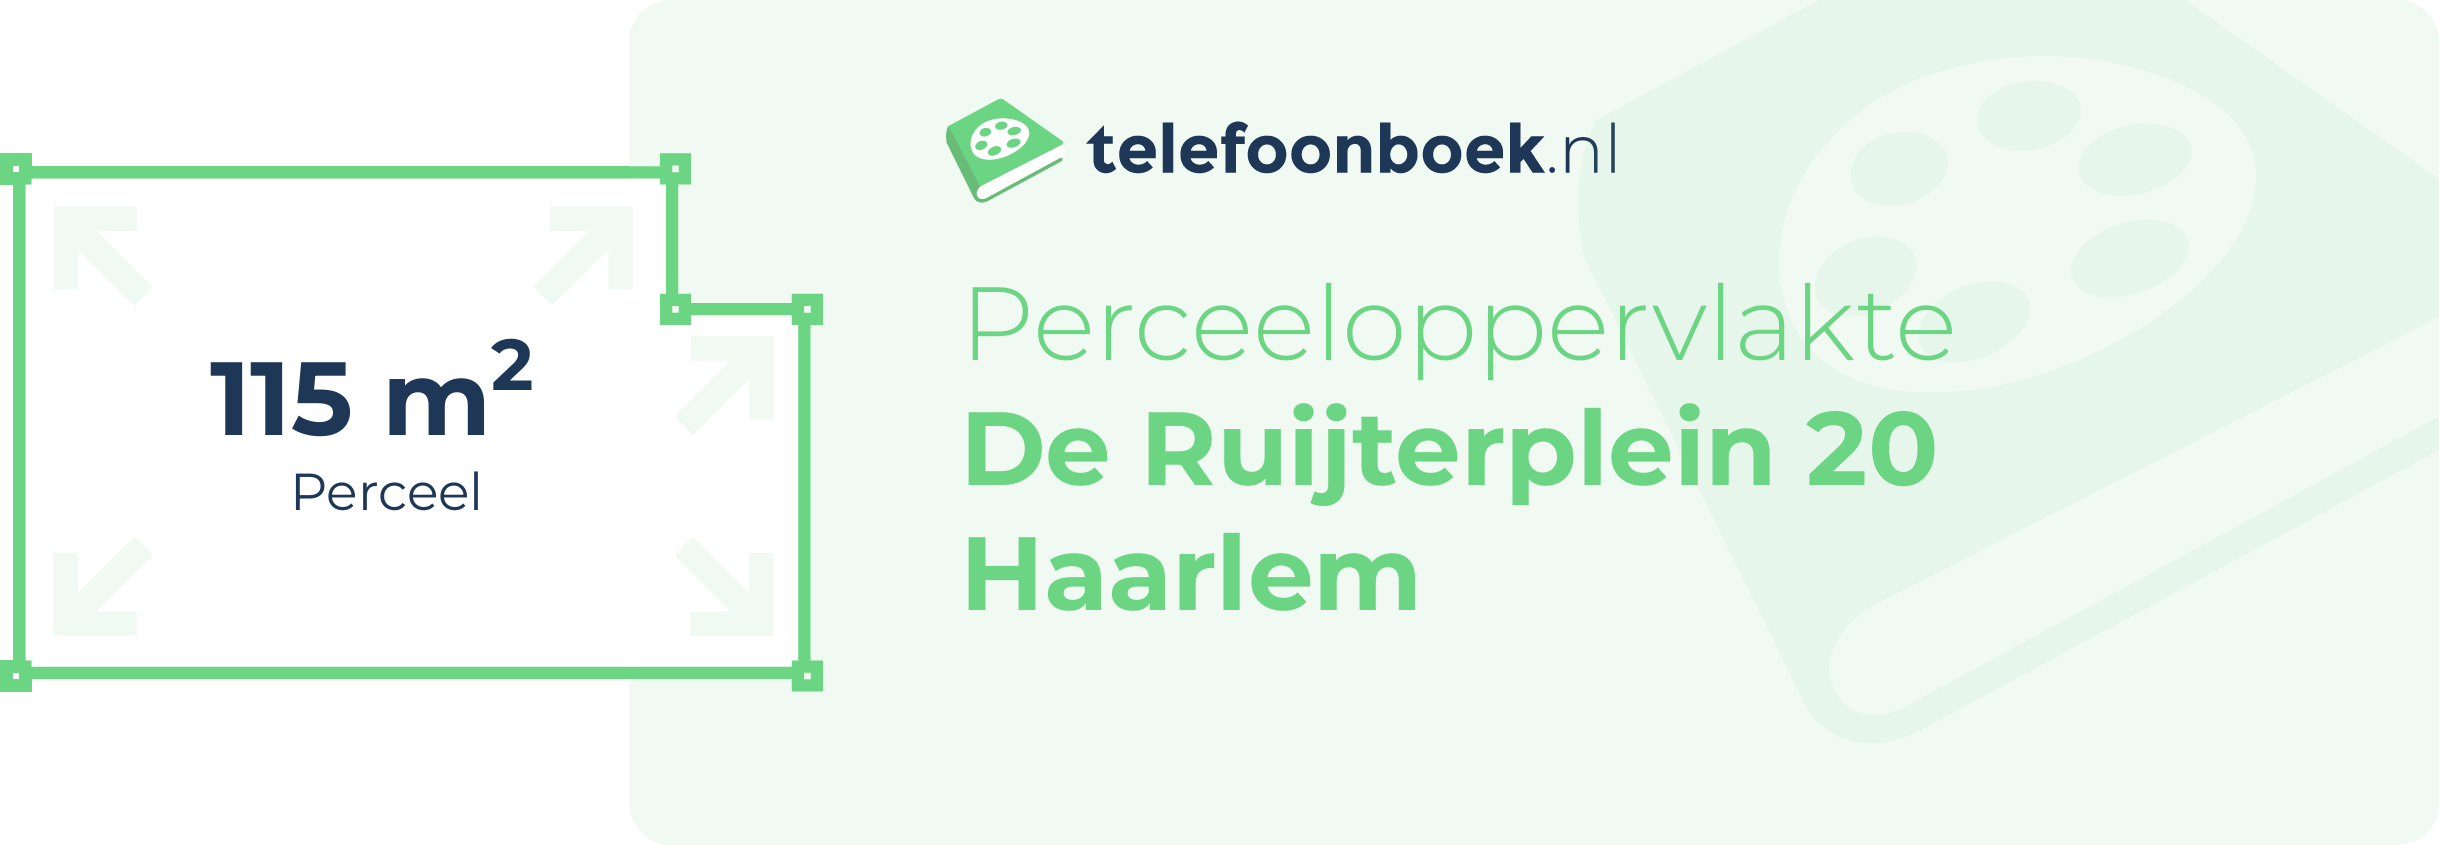 Perceeloppervlakte De Ruijterplein 20 Haarlem